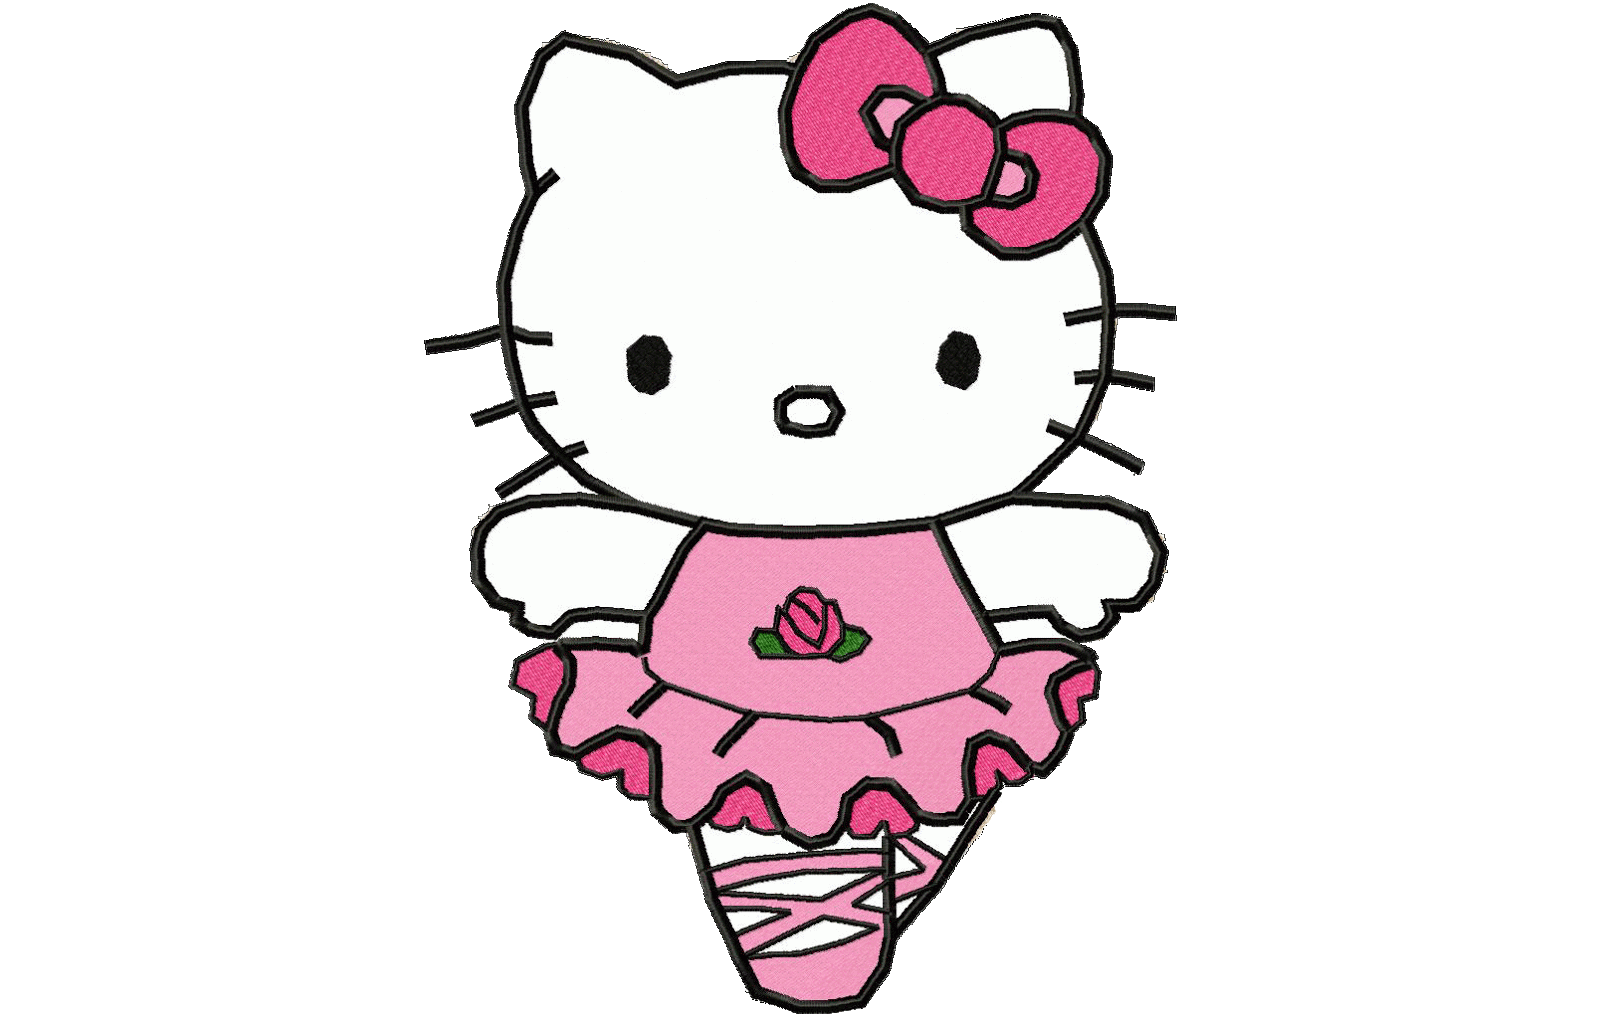 Kumpulan Gambar Dp Bbm Hello Kitty Kumpulan Gambar Meme Lucu